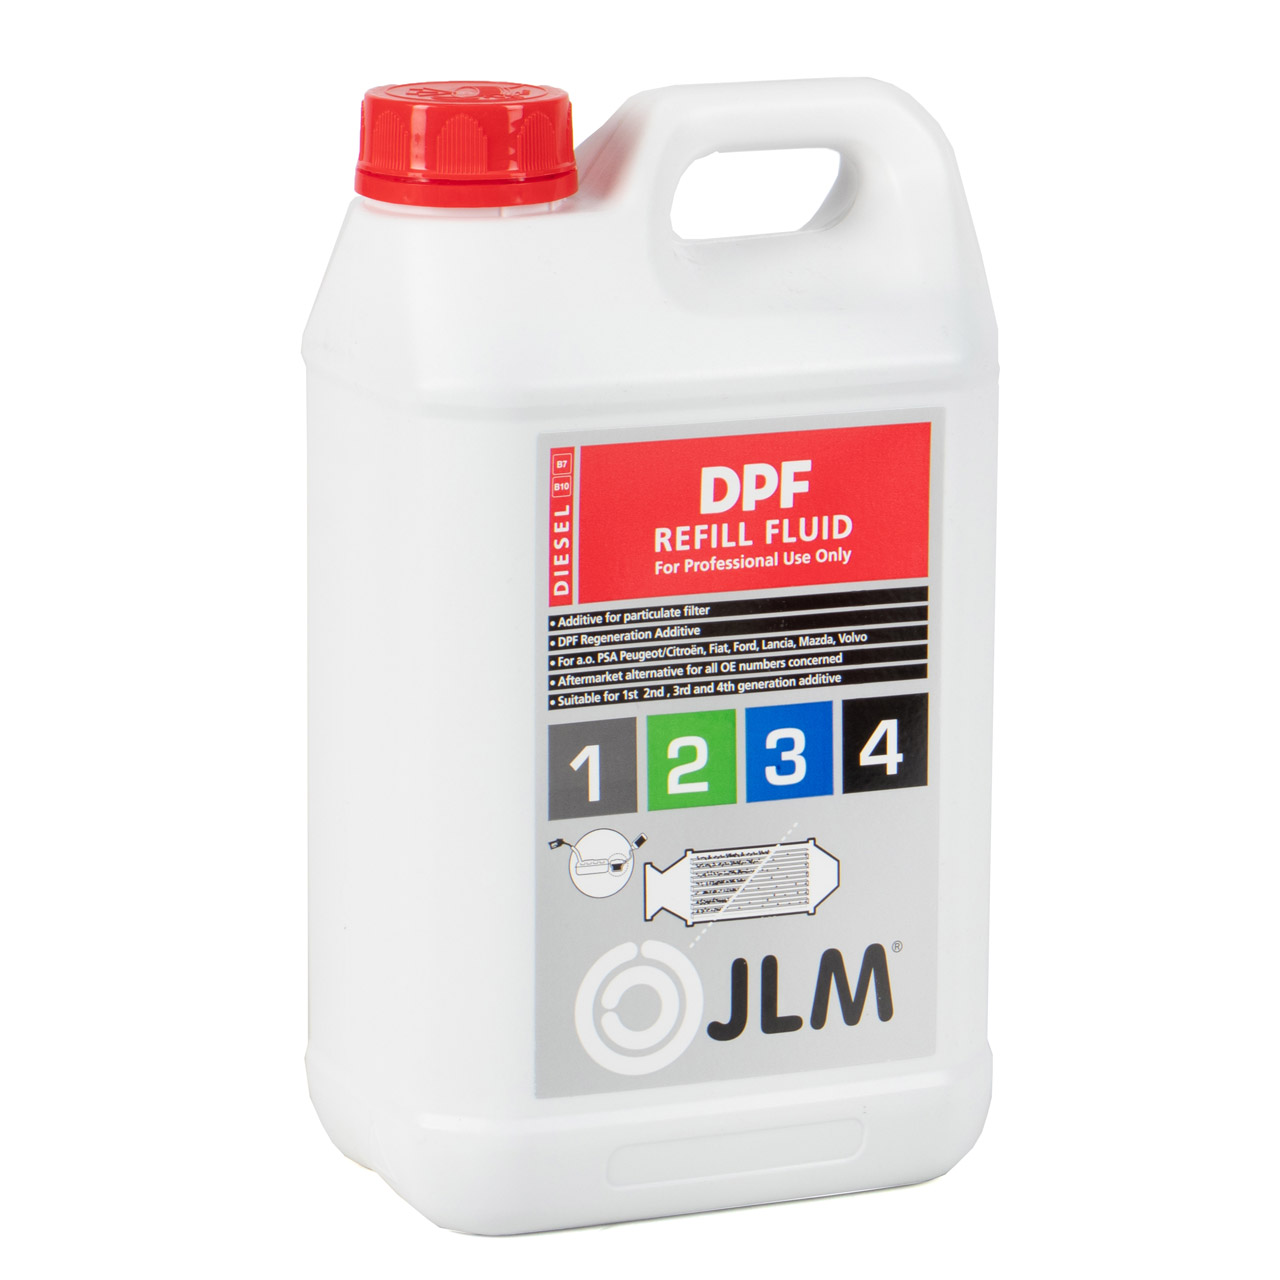 3L JLM DPF REFILL FLUID Diesel Partikelfilter Nachfüllflüssigkeit + Füllvorrichtung Kit